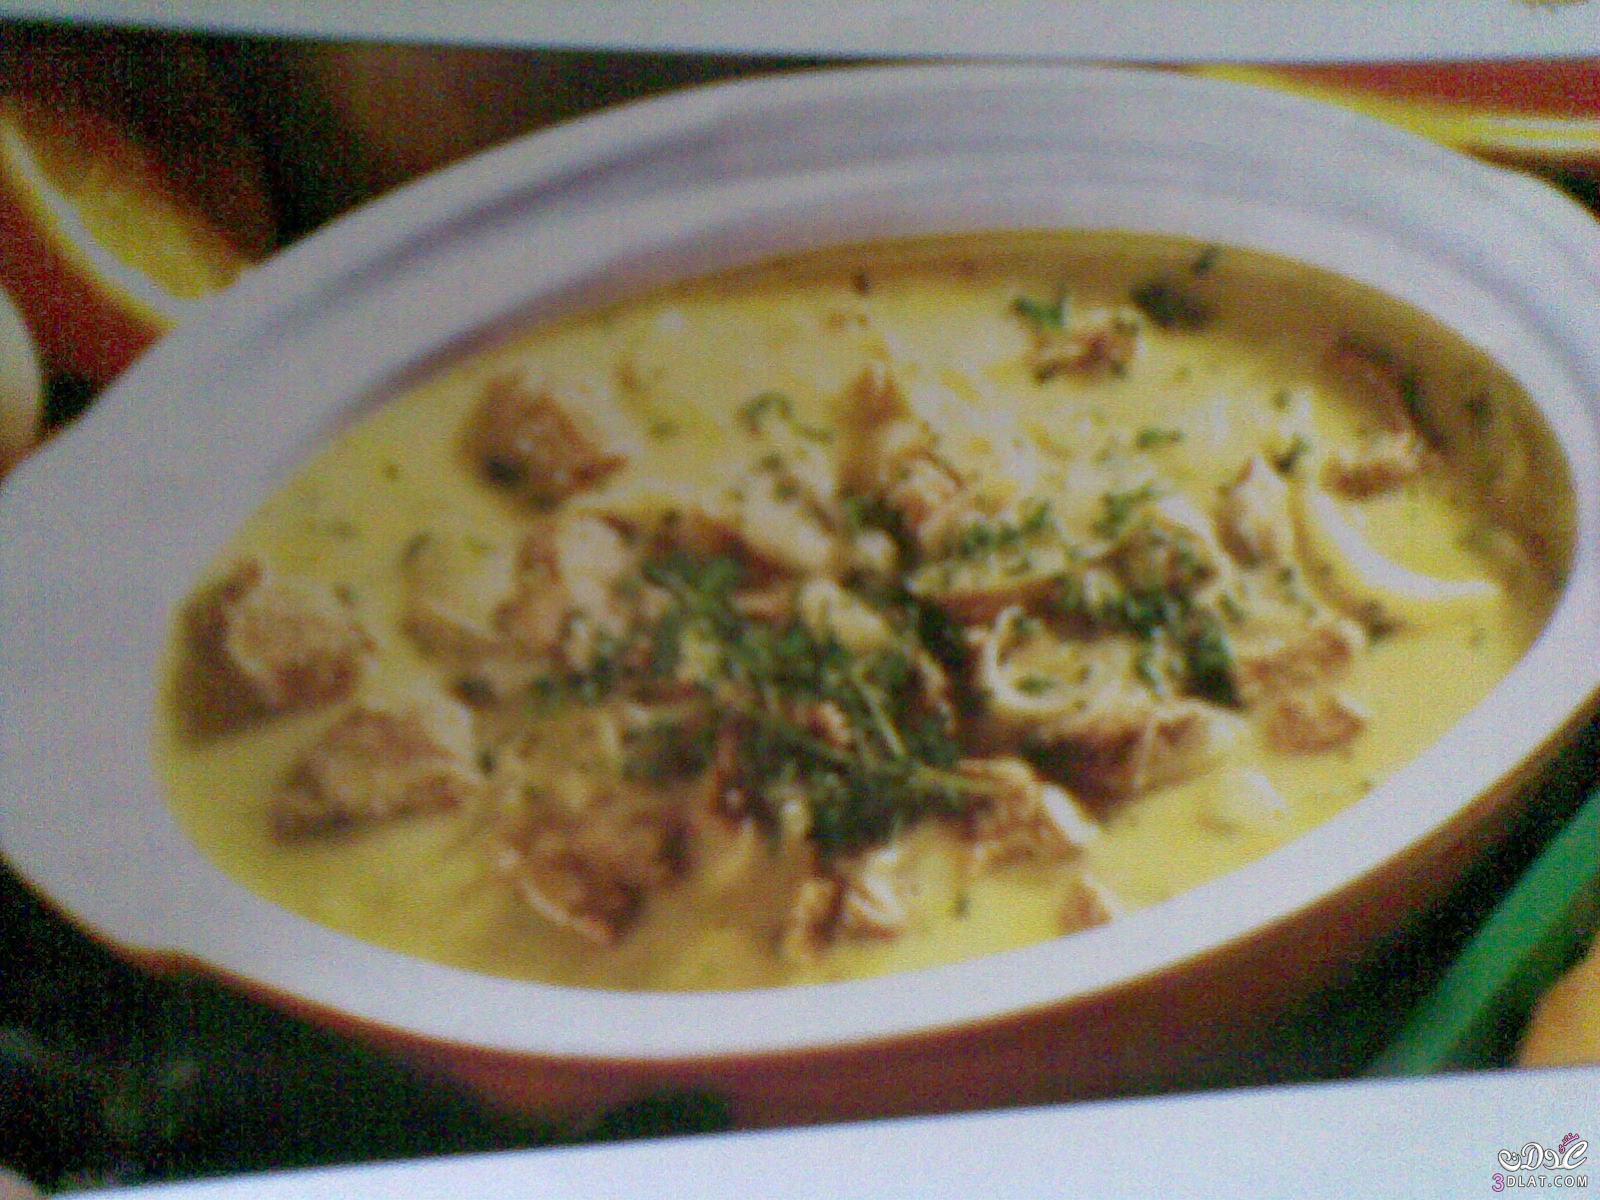 حساء لحم العجل بالصلصة البيضاء من المطبخ الفرنسي , طريقة عمل حساء لحم العجل الفر